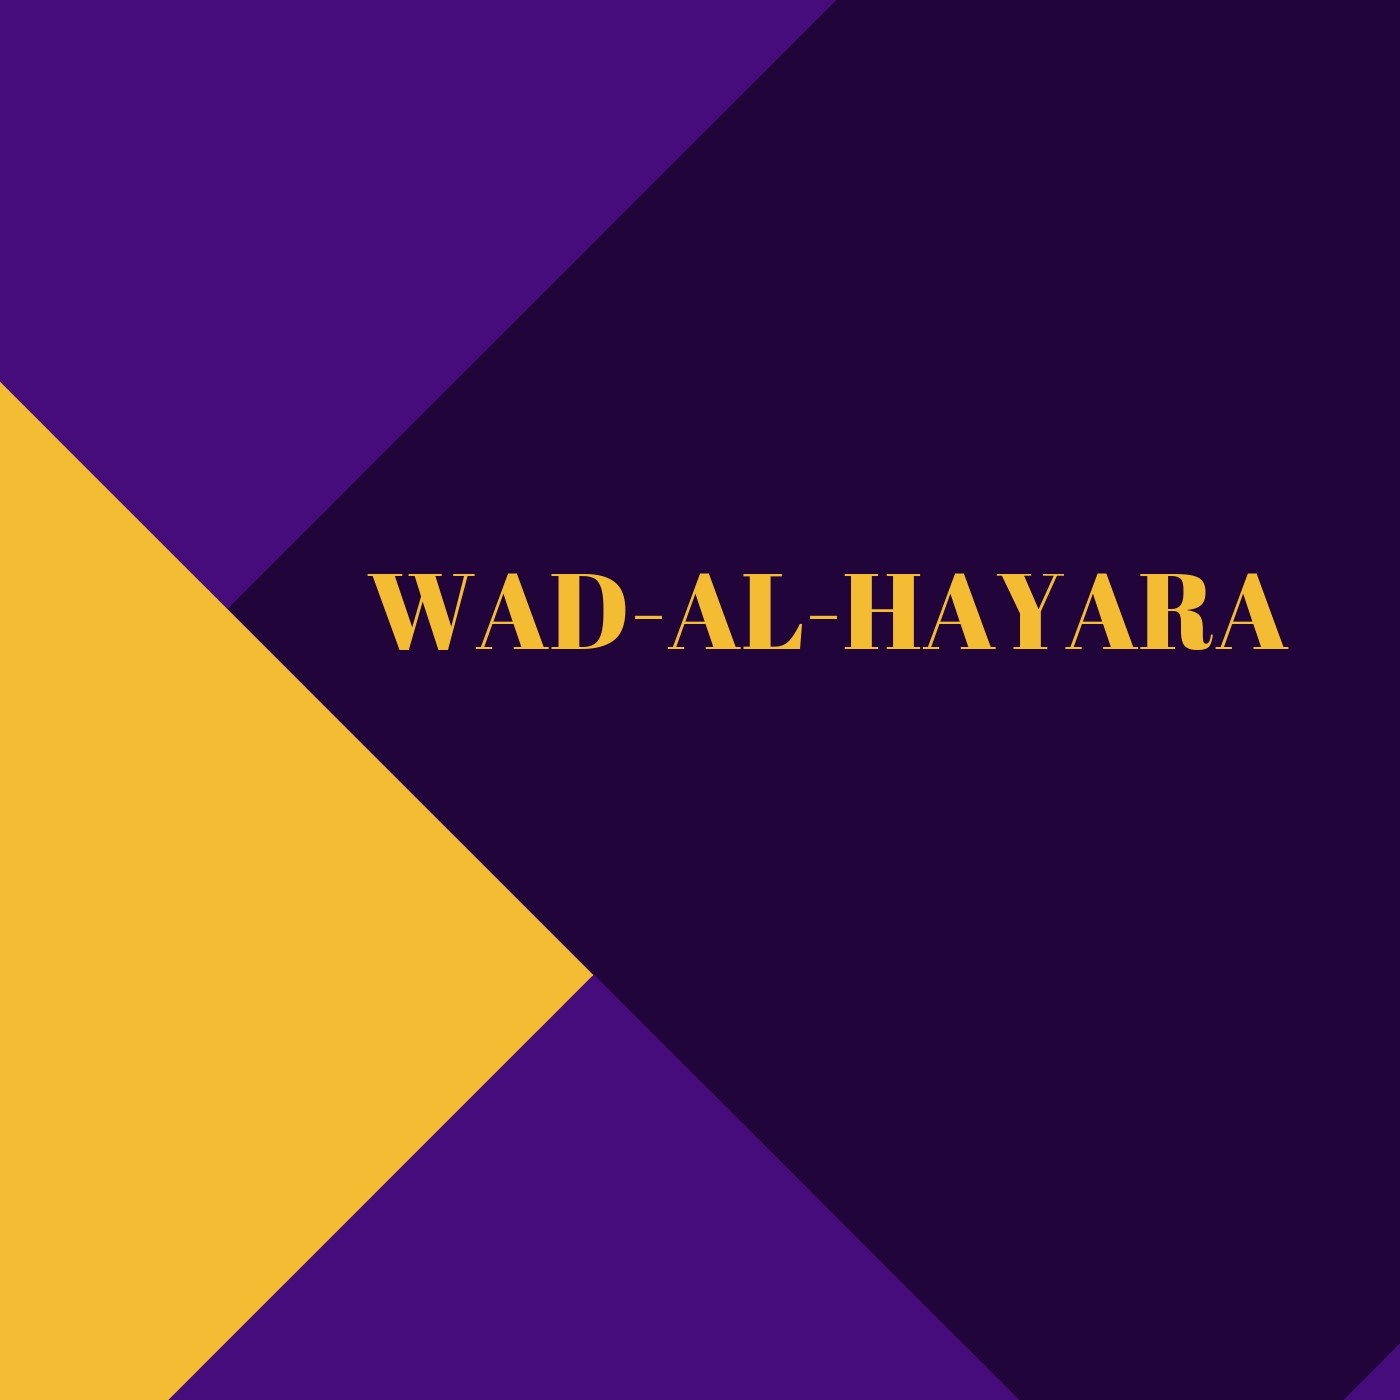 “WAD-AL-HAYARA”